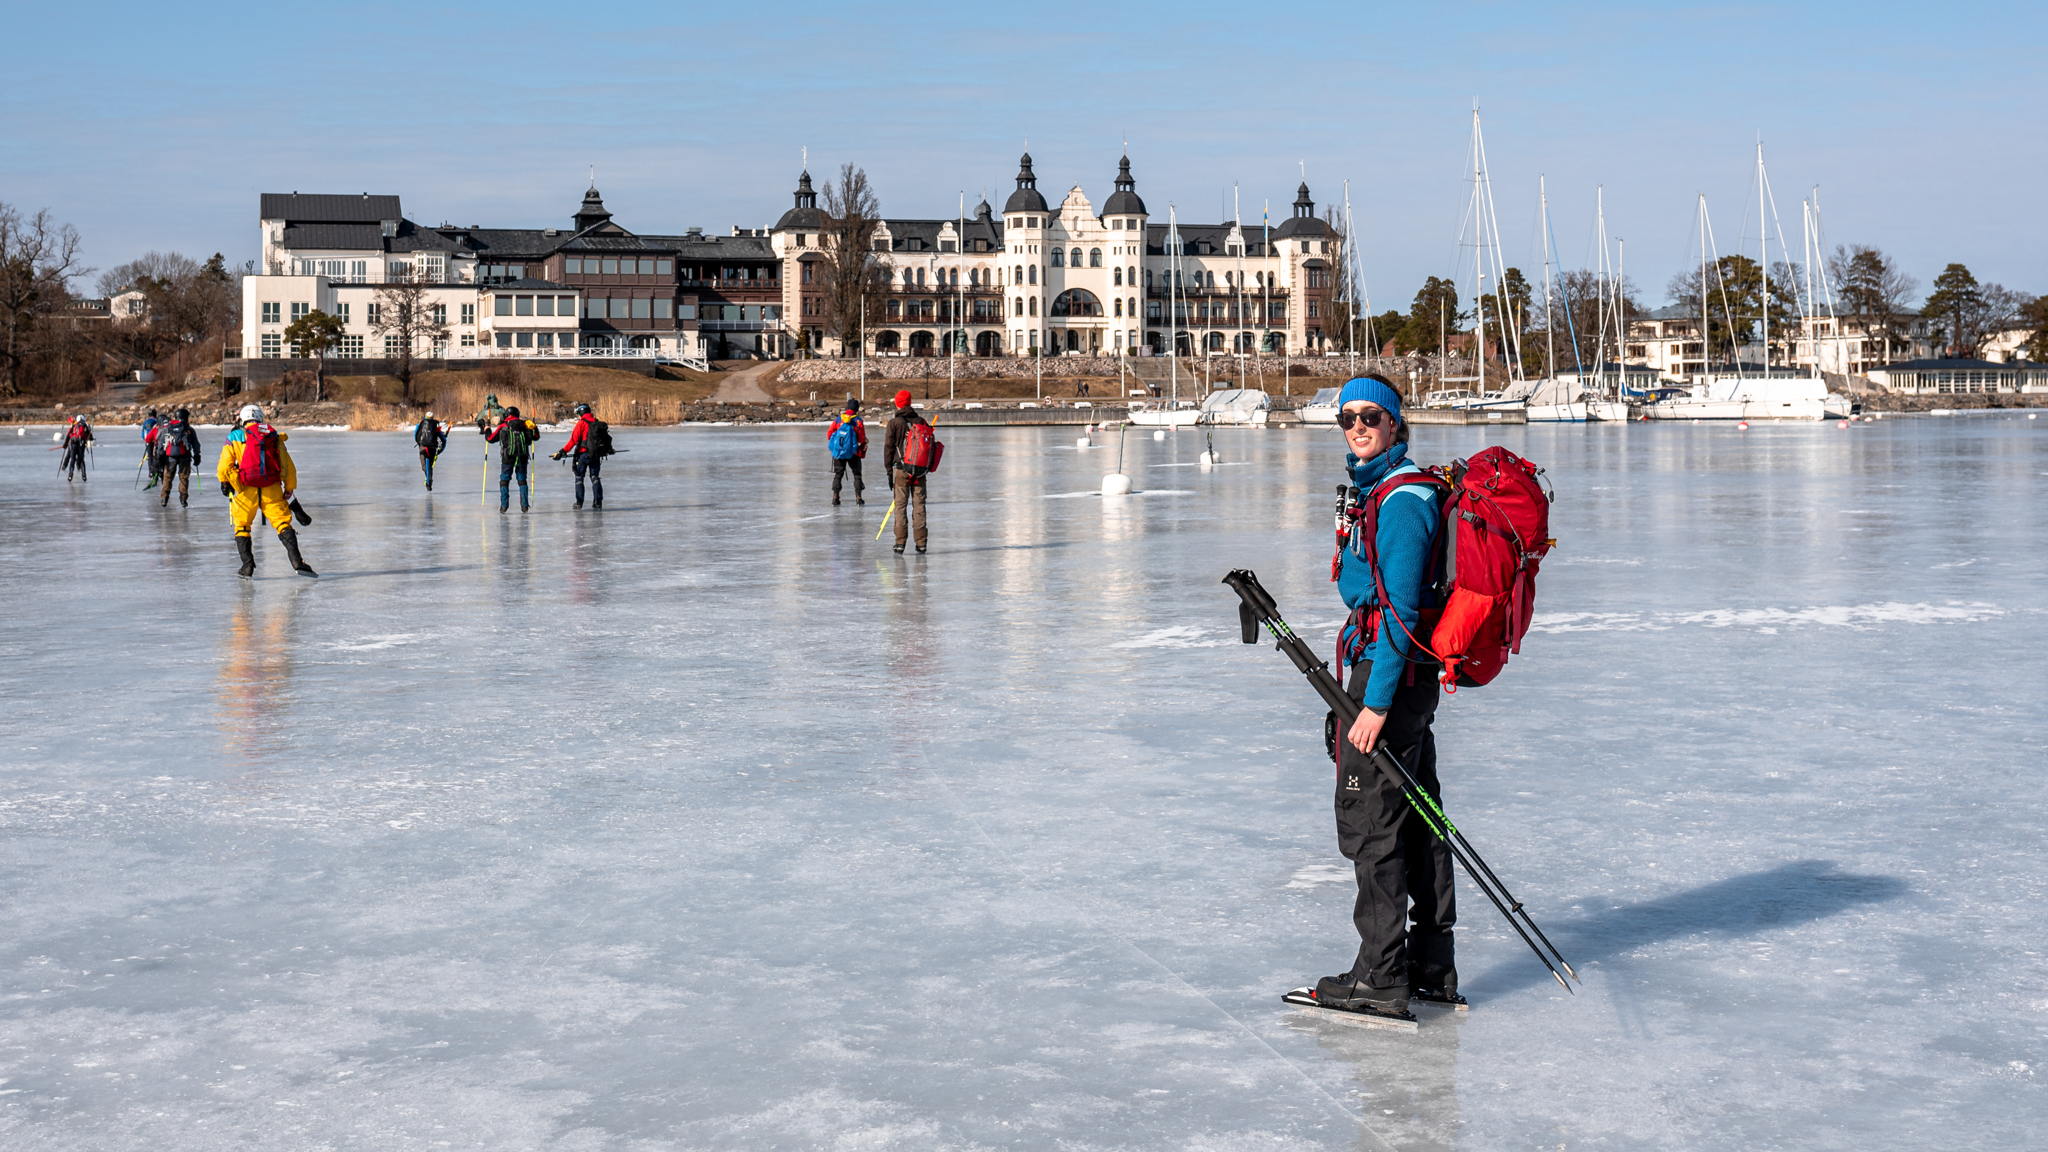 Skating at Saltsjöbaden